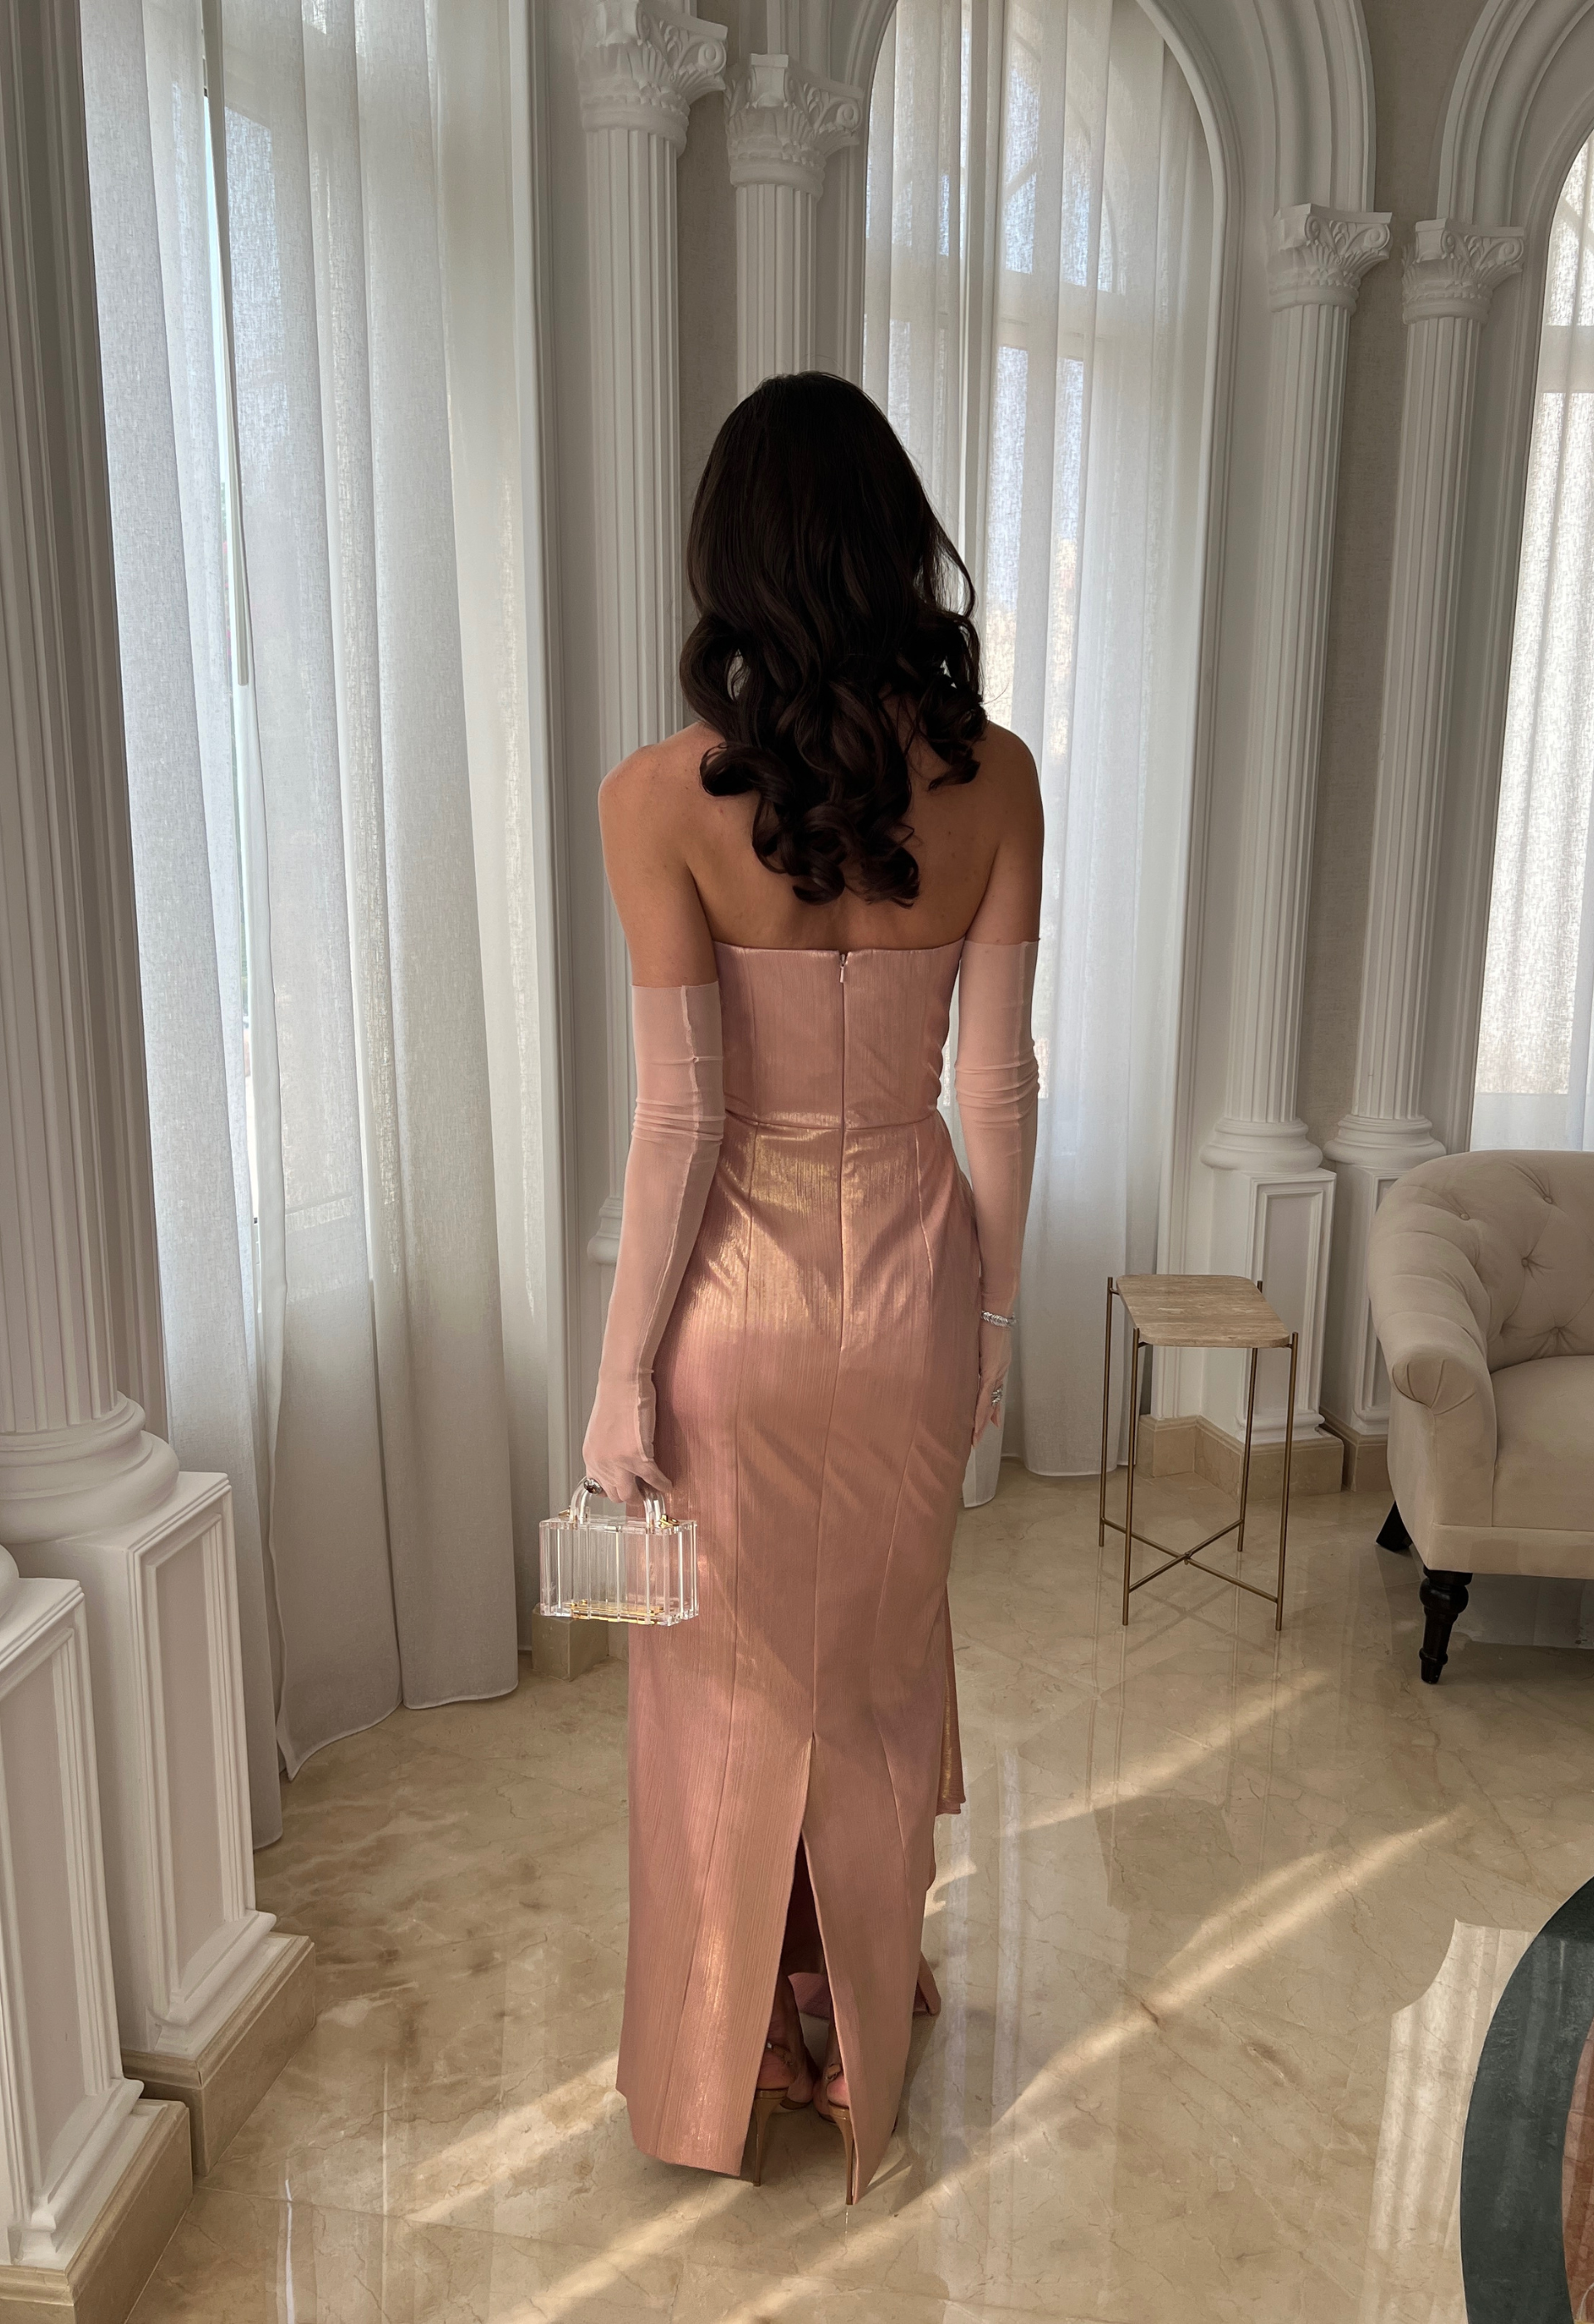 Lamé pink gown